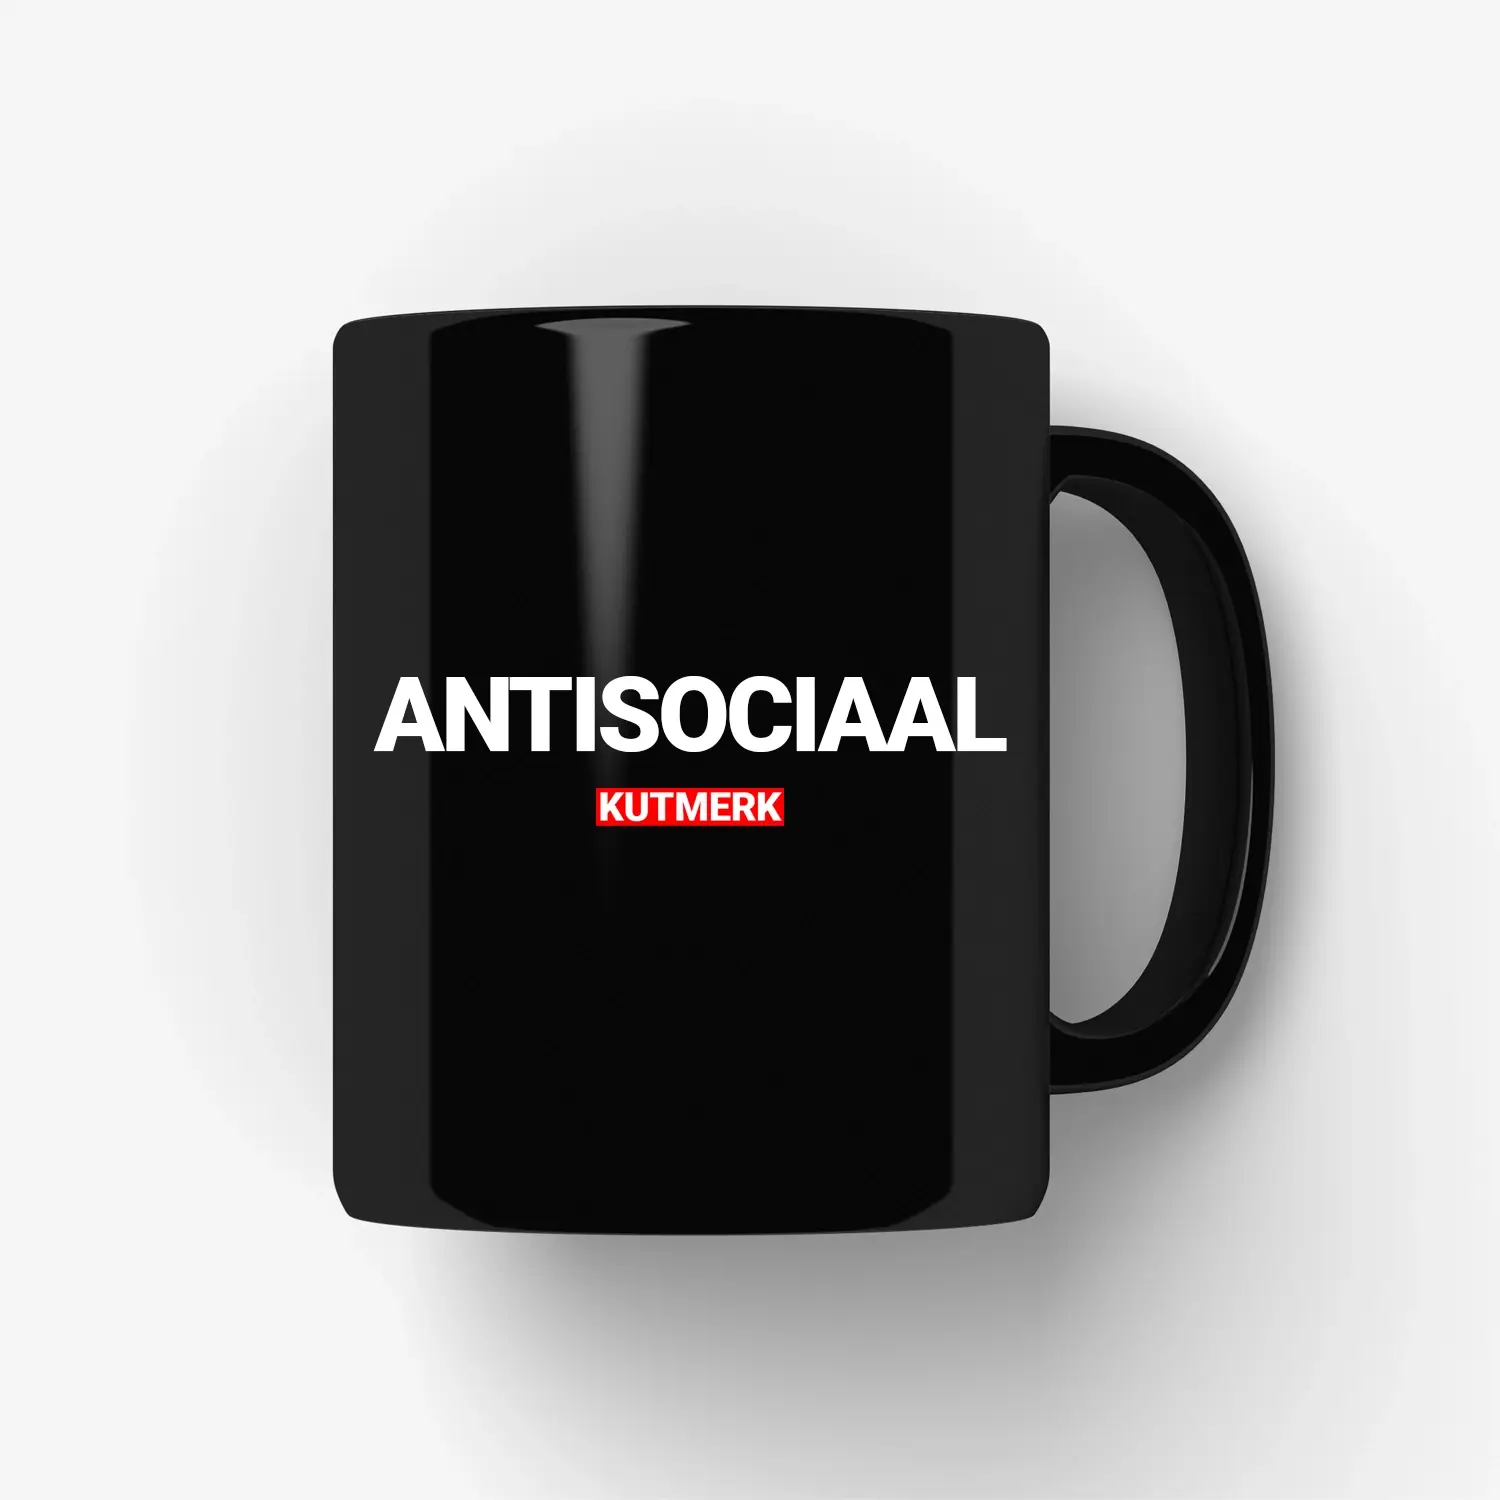 Antisociaal